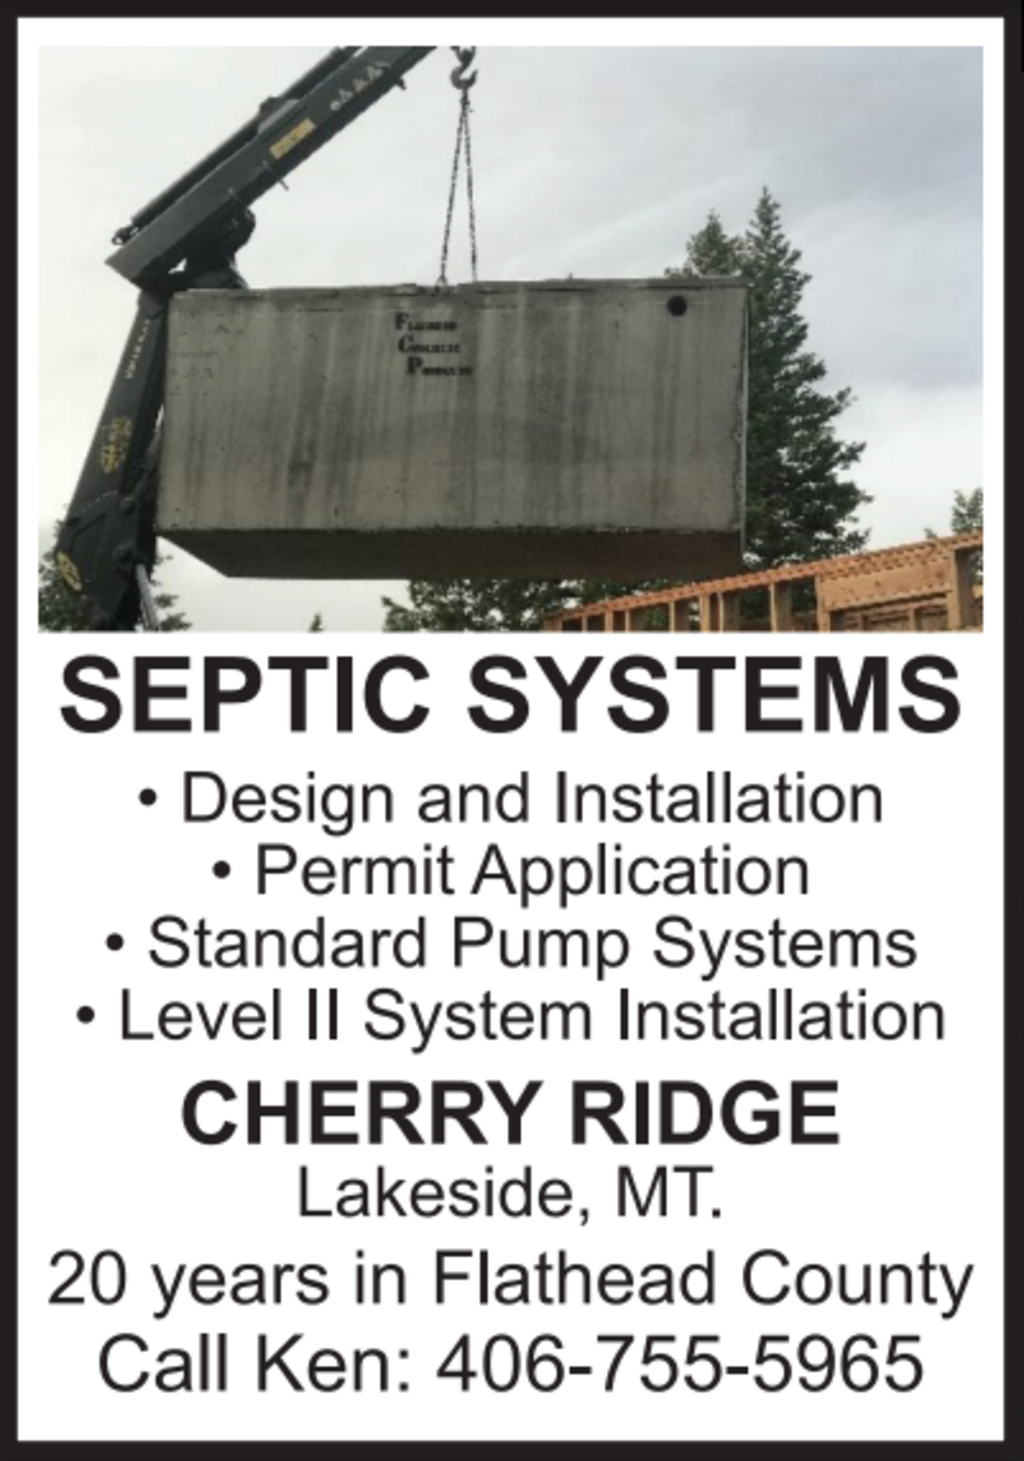  SEPTIC <br> Systems <br>   SEPTIC <br> Systems <br> ad 